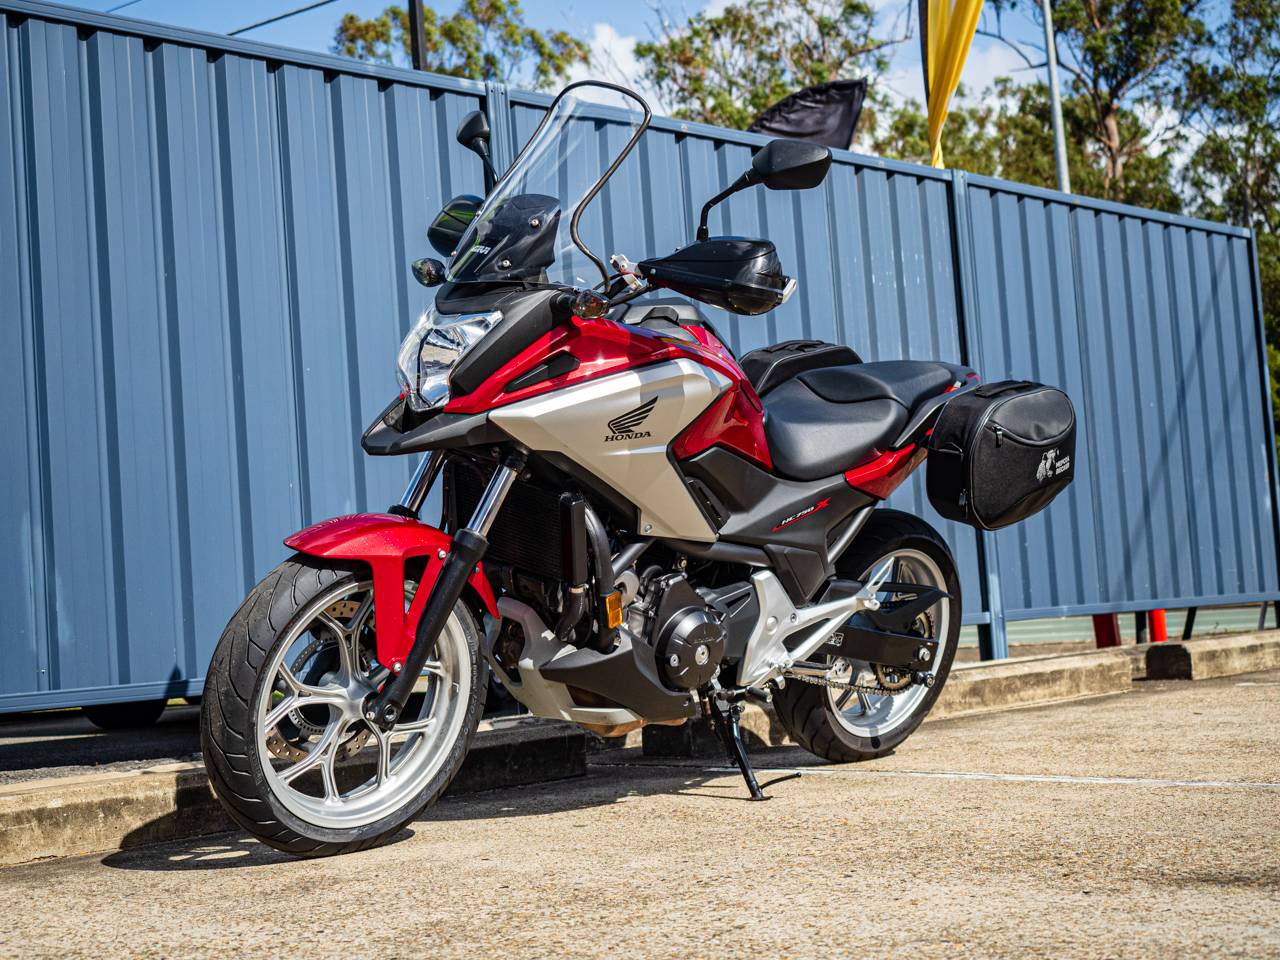 Honda (хонда) nc 750 xd — мотоцикл с удивительными ходовыми качествами